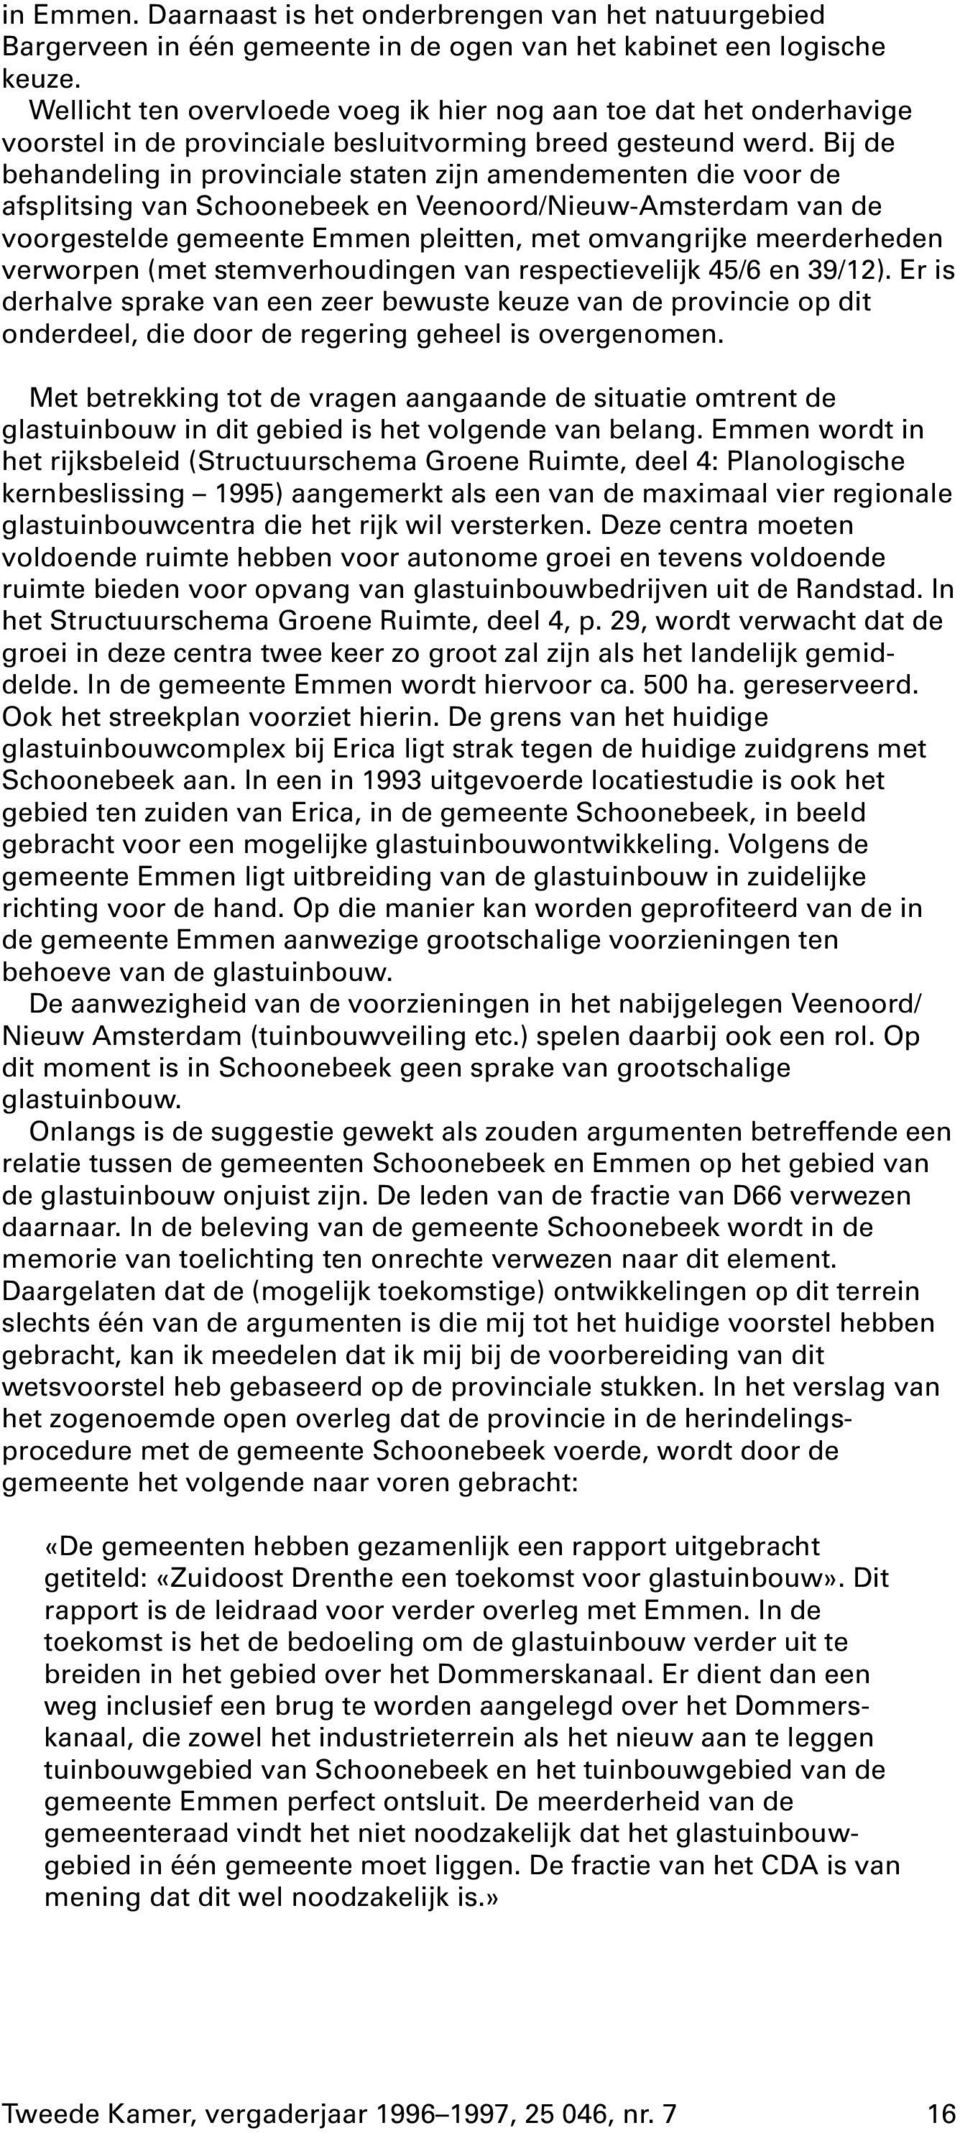 Bij de behandeling in provinciale staten zijn amendementen die voor de afsplitsing van Schoonebeek en Veenoord/Nieuw-Amsterdam van de voorgestelde gemeente Emmen pleitten, met omvangrijke